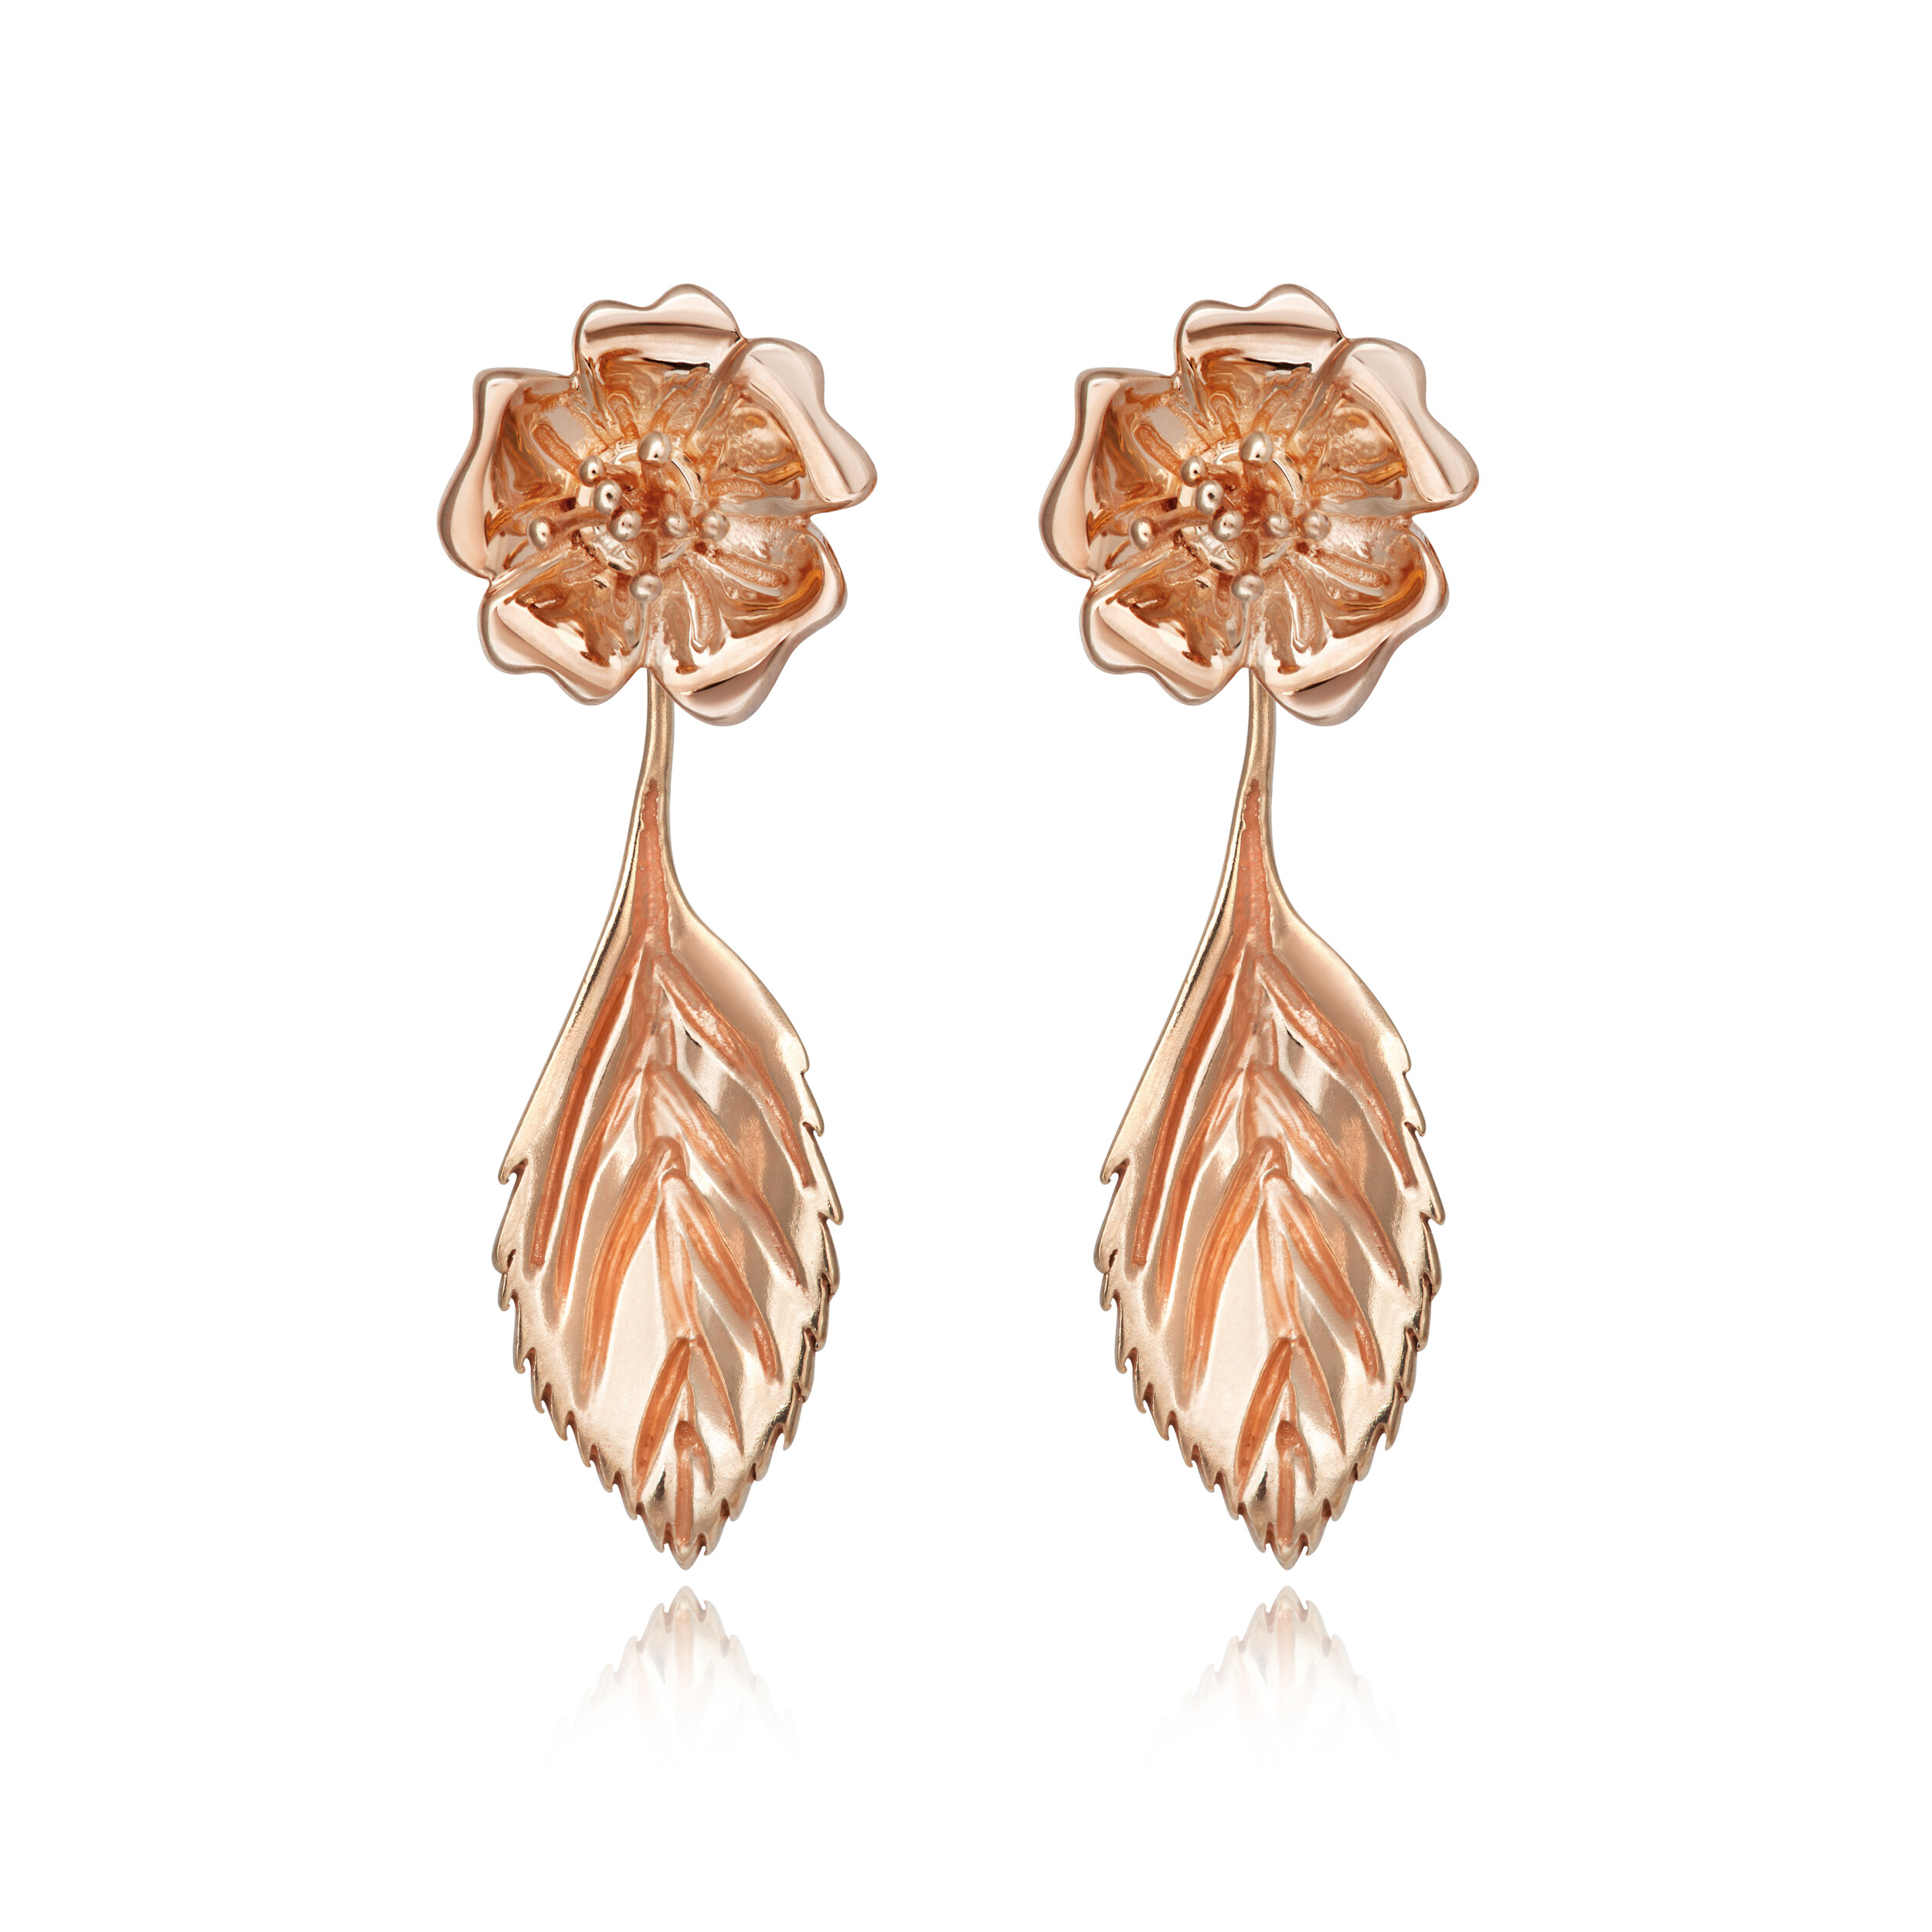 ROSE pretty drop pendant earrings